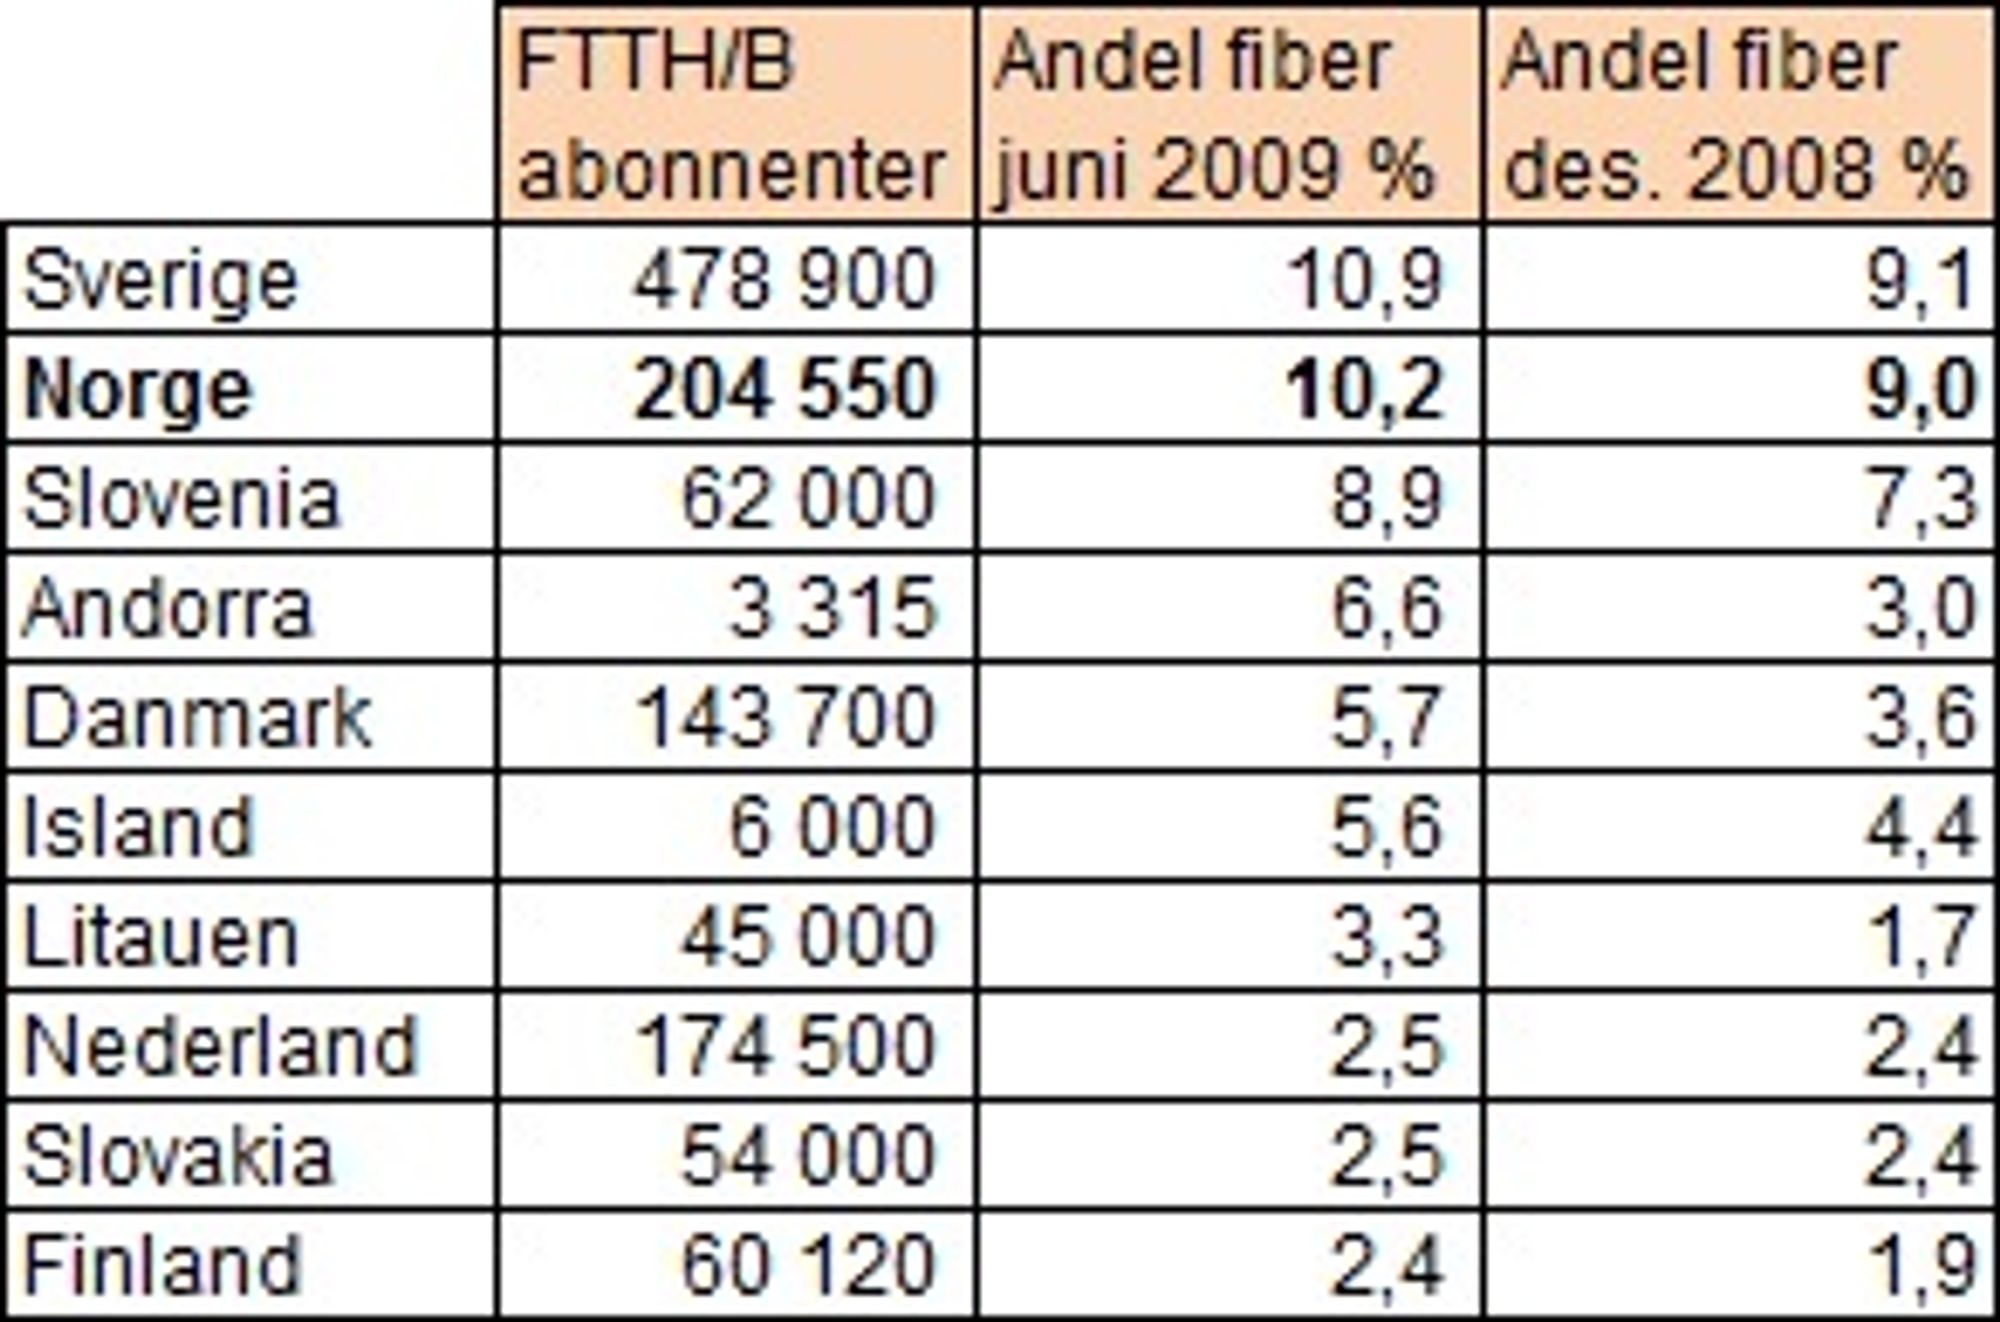 Norge har nest best fiber-andel i Europa ifølge FTTH. (Kilde: FTTH Council rapport september 2009)